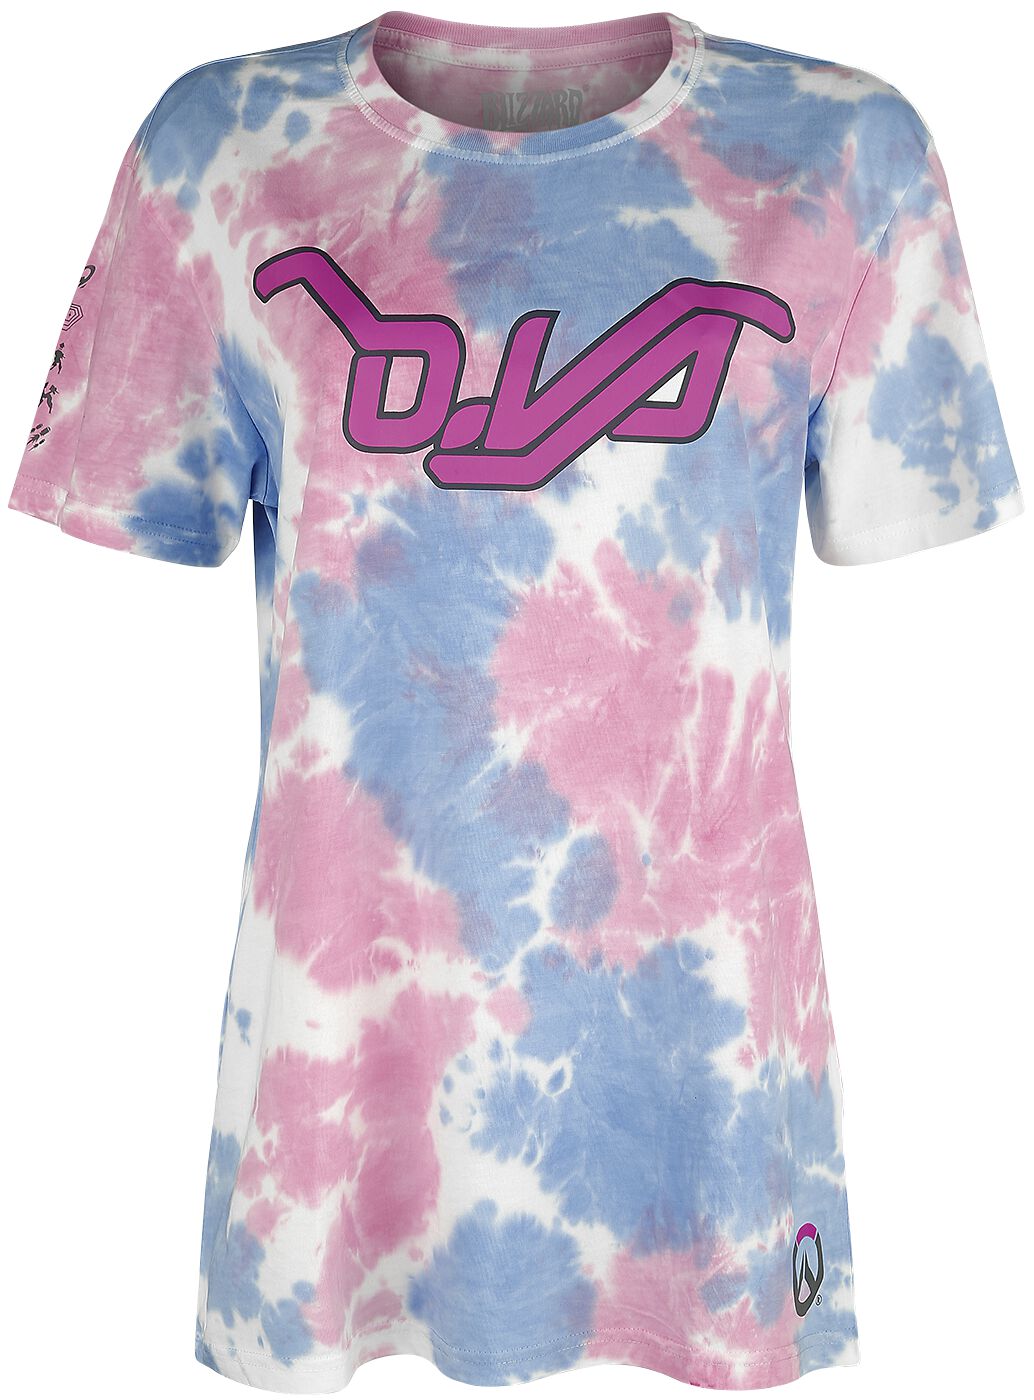 Image of Overwatch D.VA - Tie Dye T-Shirt multicolor